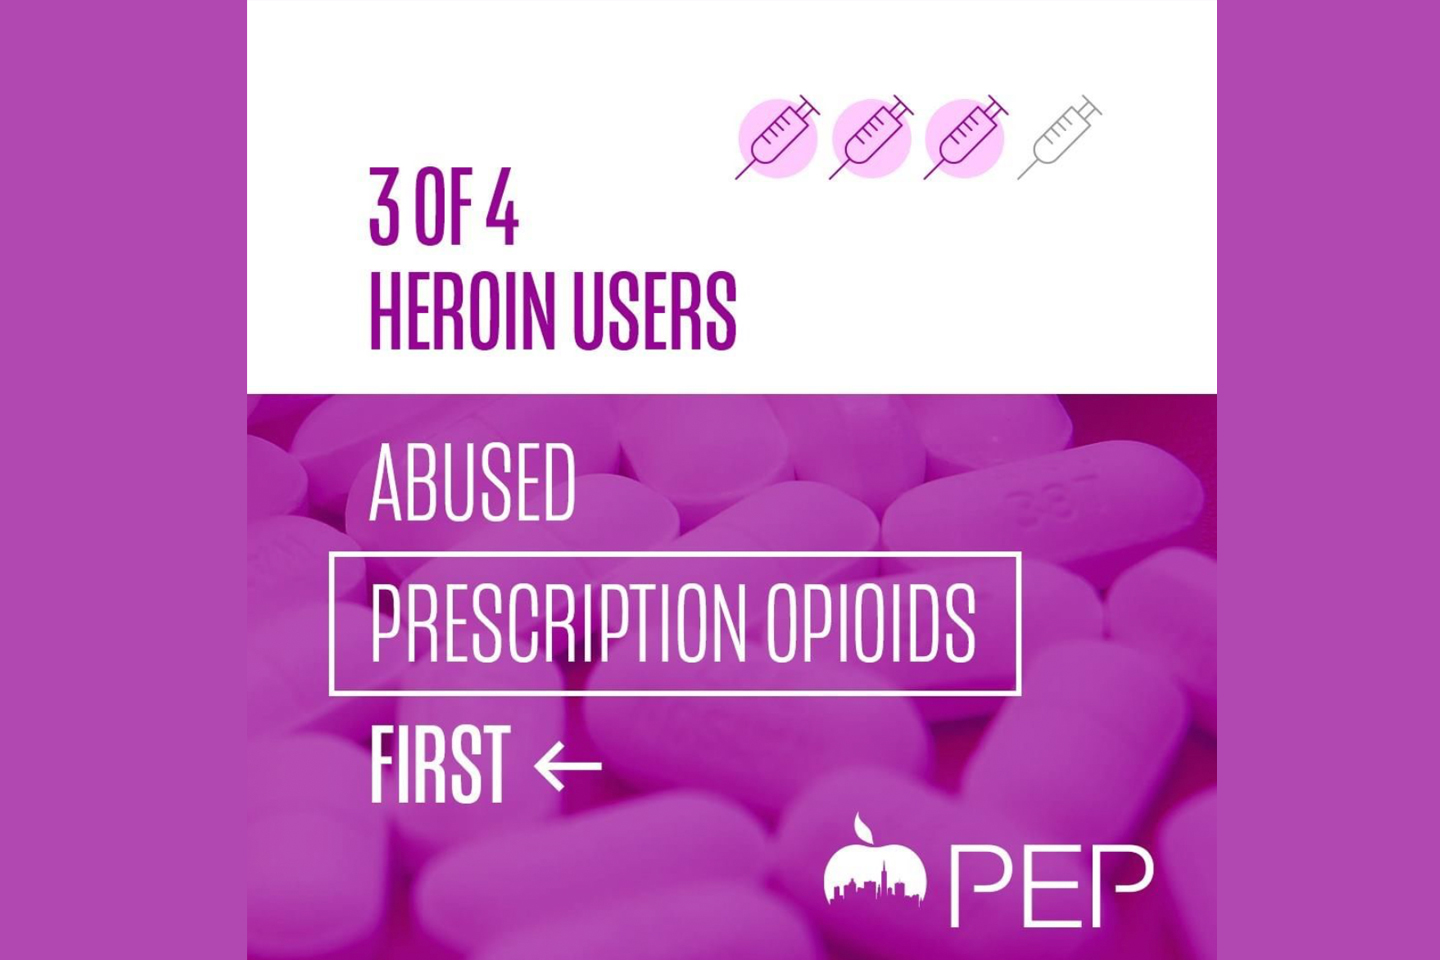 Heroin addiction often starts with prescription opioid misuse.